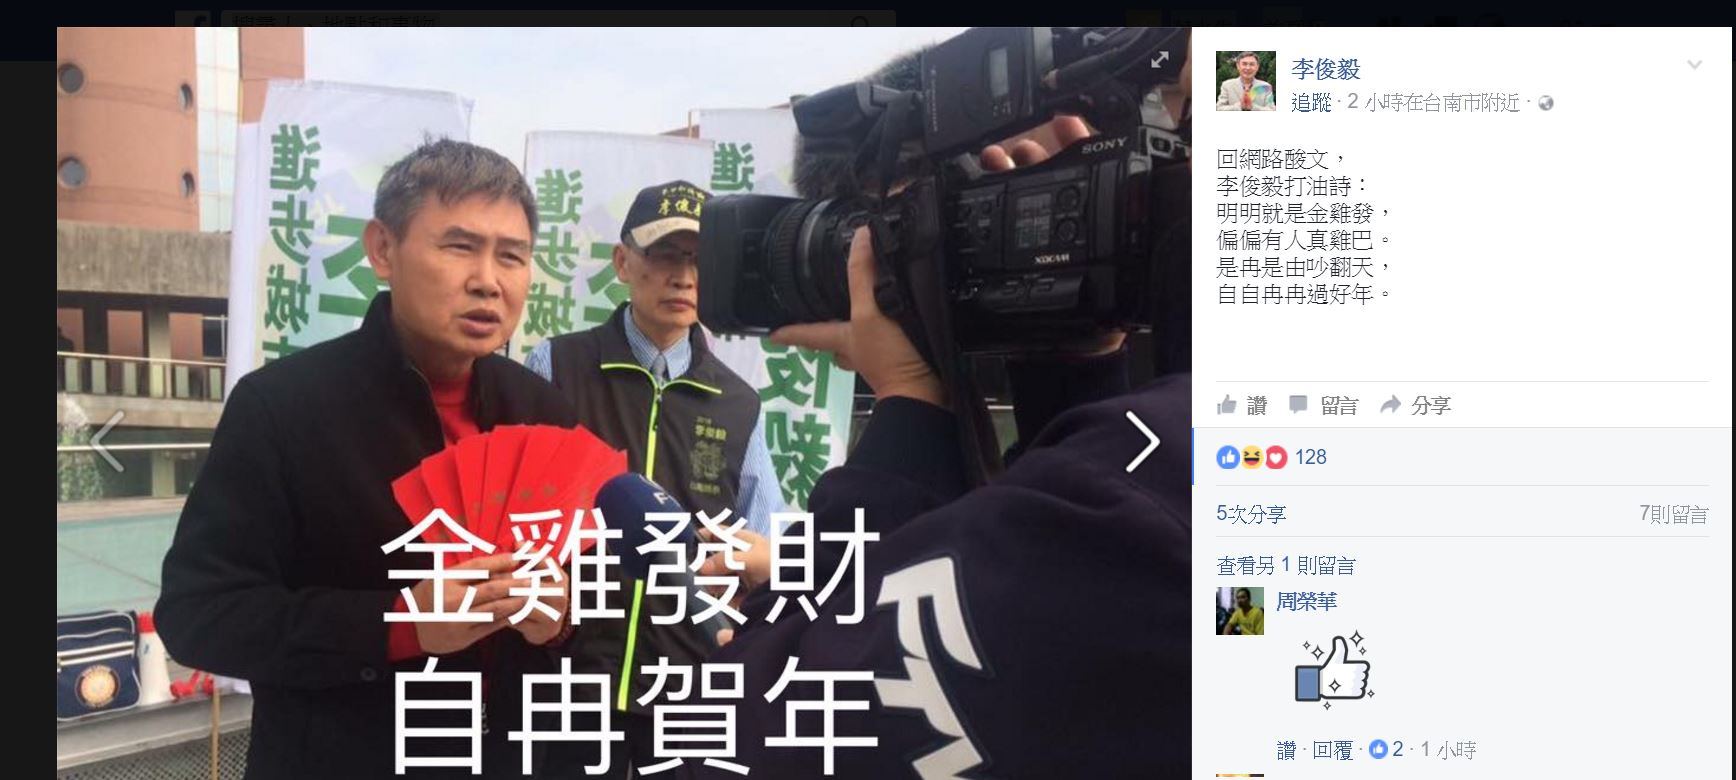 民進黨副秘書長李俊毅在臉書上PO出打油詩回擊網友。(翻攝自李俊毅臉書)